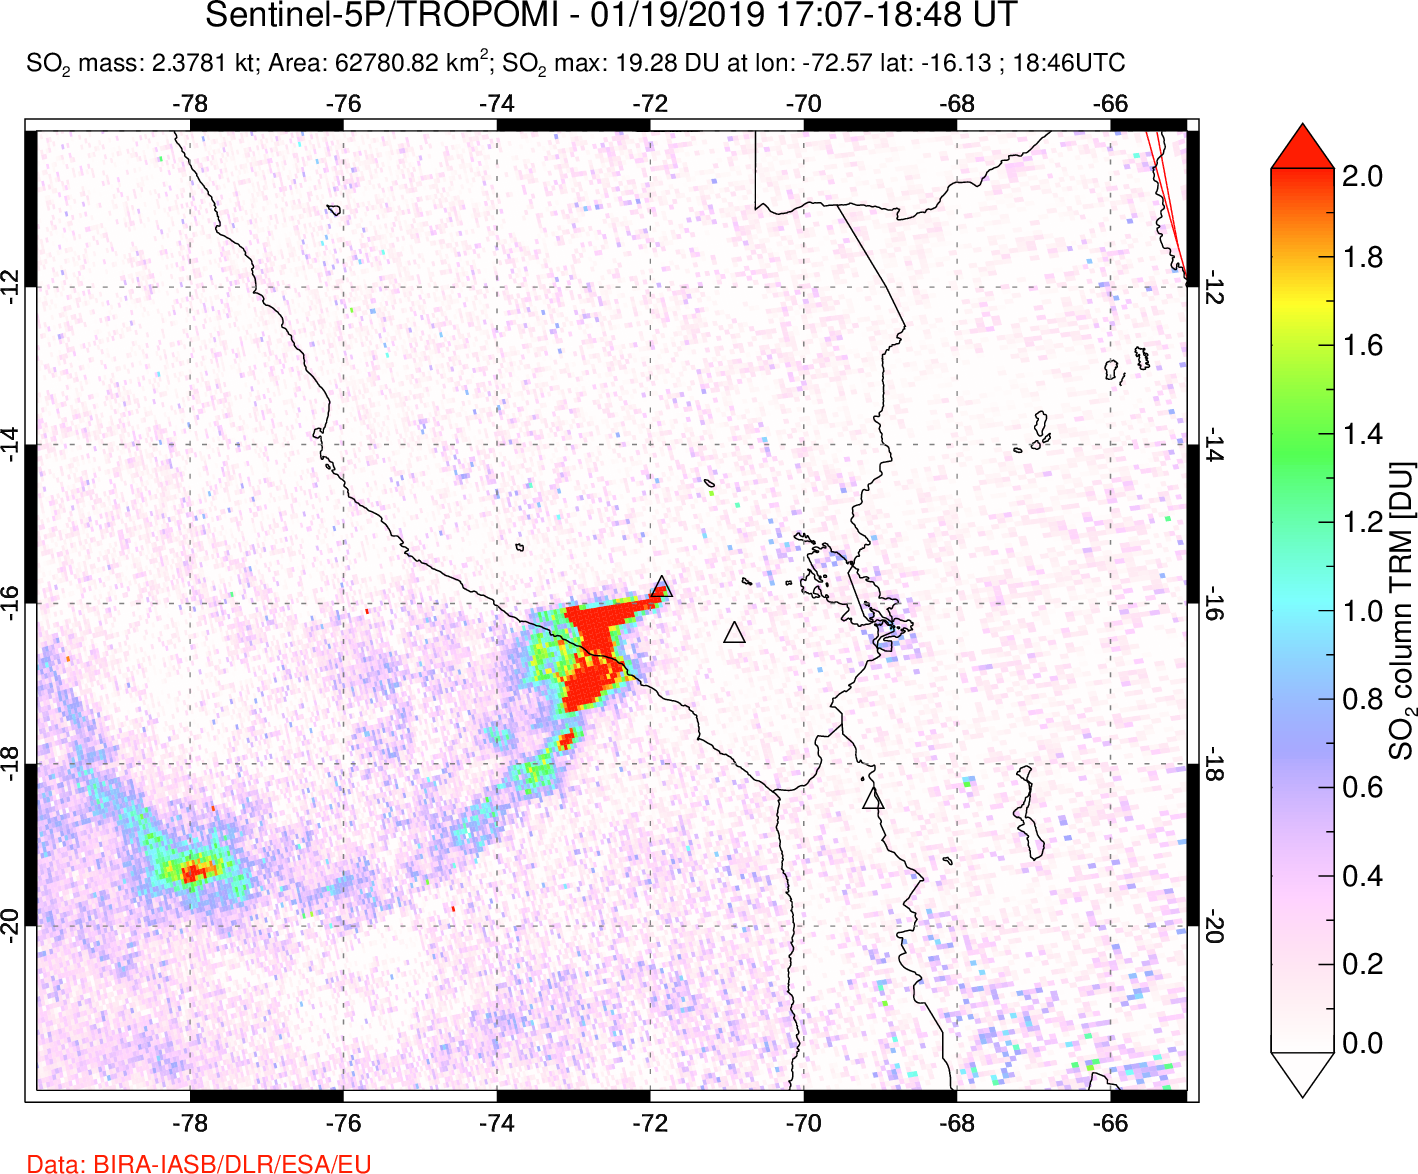 A sulfur dioxide image over Peru on Jan 19, 2019.